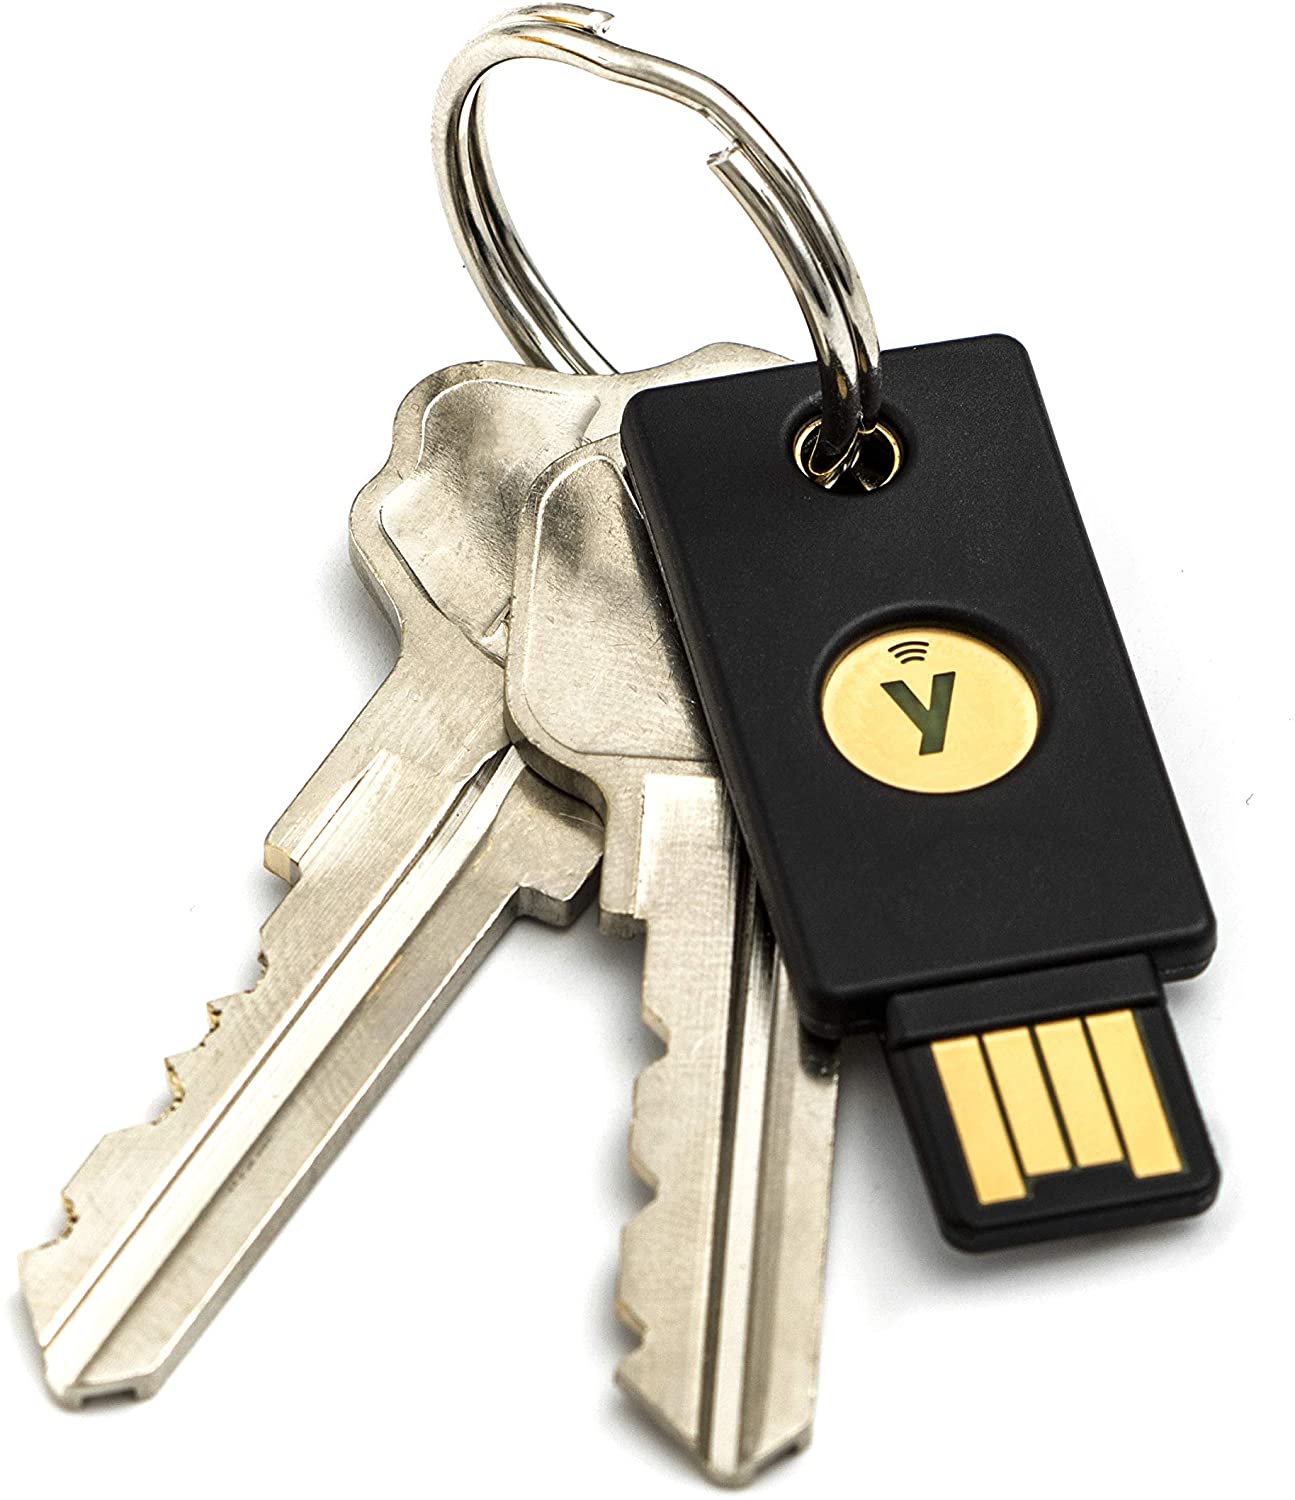 Le Yubico x Keyport Pivot 2.0 offre un moyen plus sûr de transporter des clés de sécurité